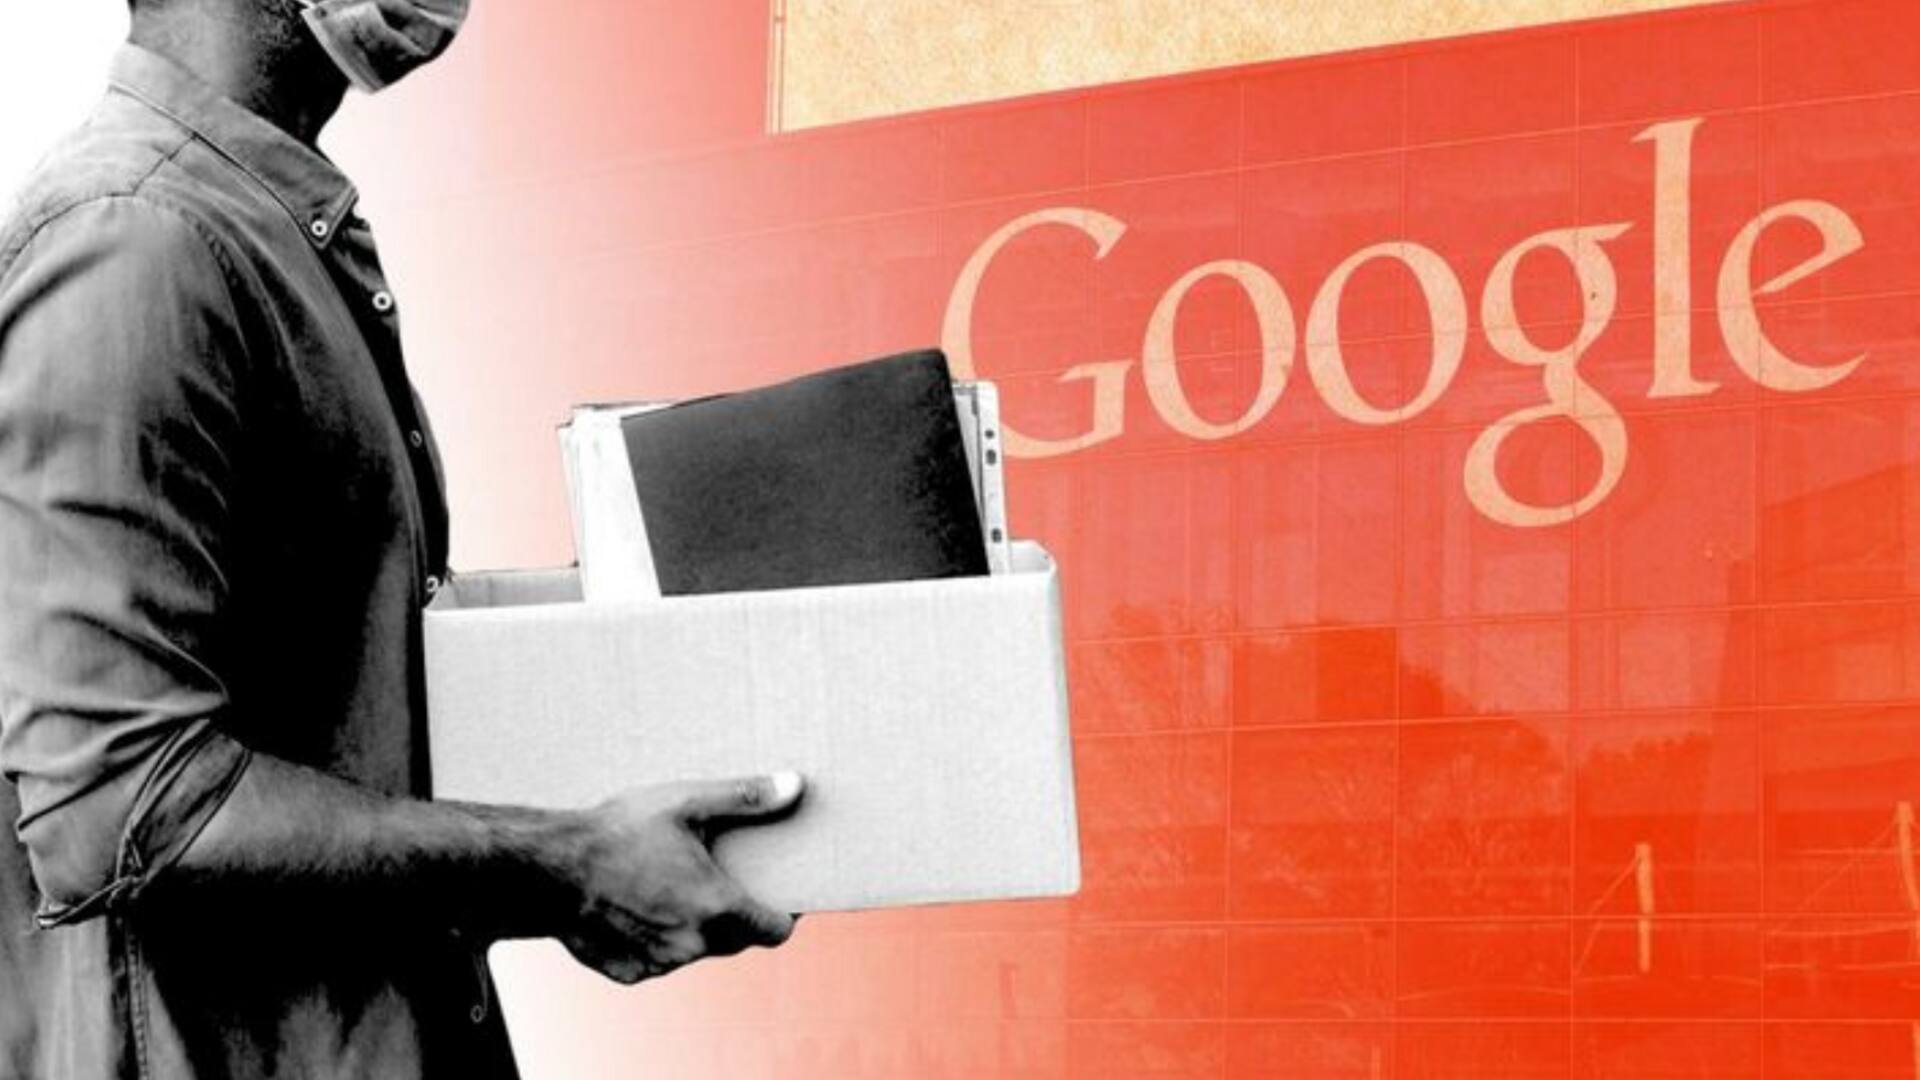 गूगल से निकाले गए कर्मचारी बना रहे हैं नई कंपनी, जानें क्या है उद्देश्य